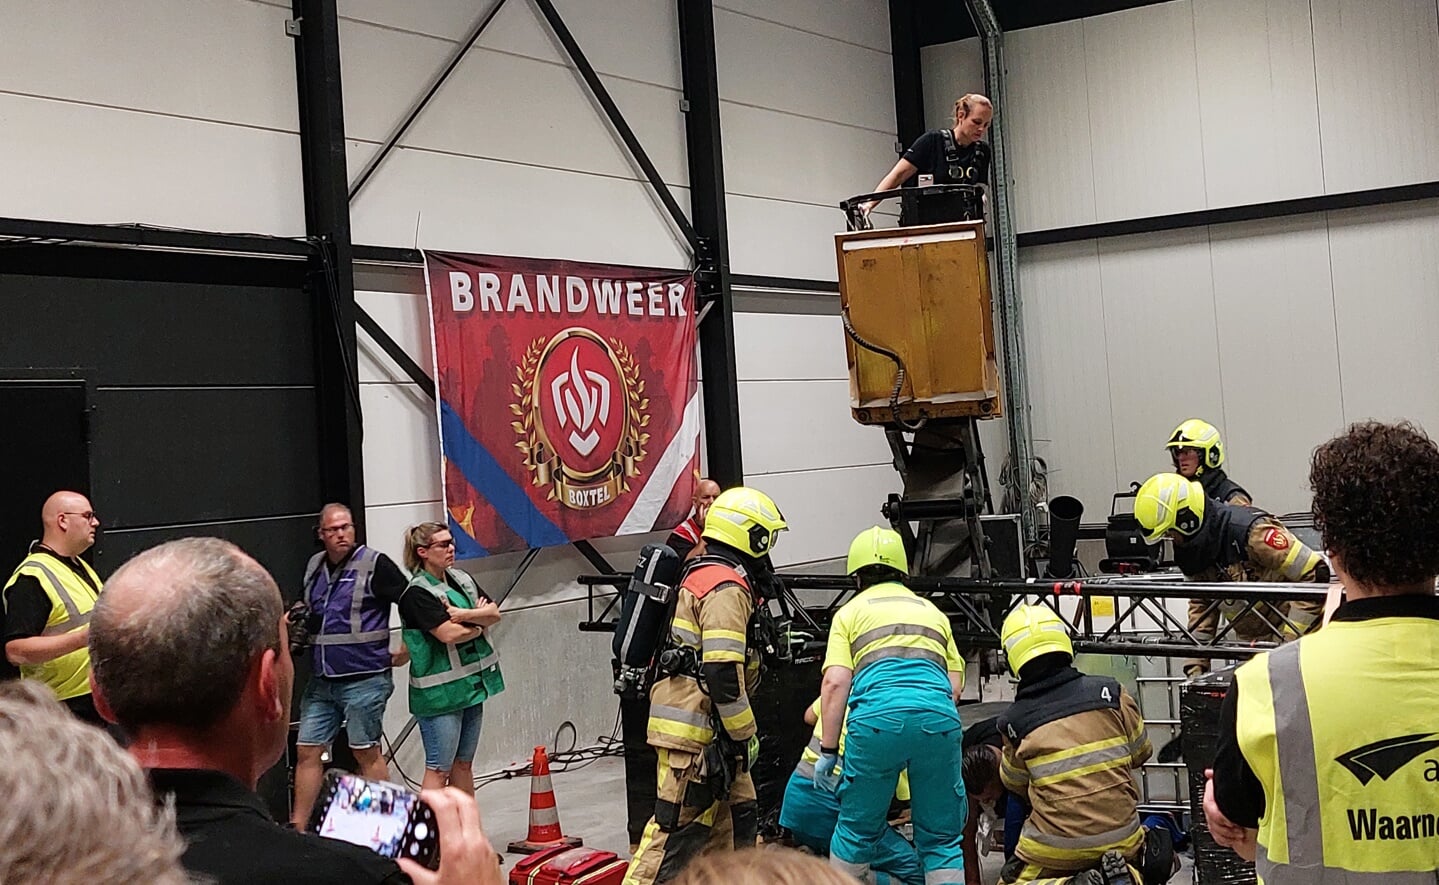 Spektakel tijdens de finale van de brandweerwedstrijden zaterdag in Boxtel. Locatie was het pand van MagicFX aan de Schouwrooij. 